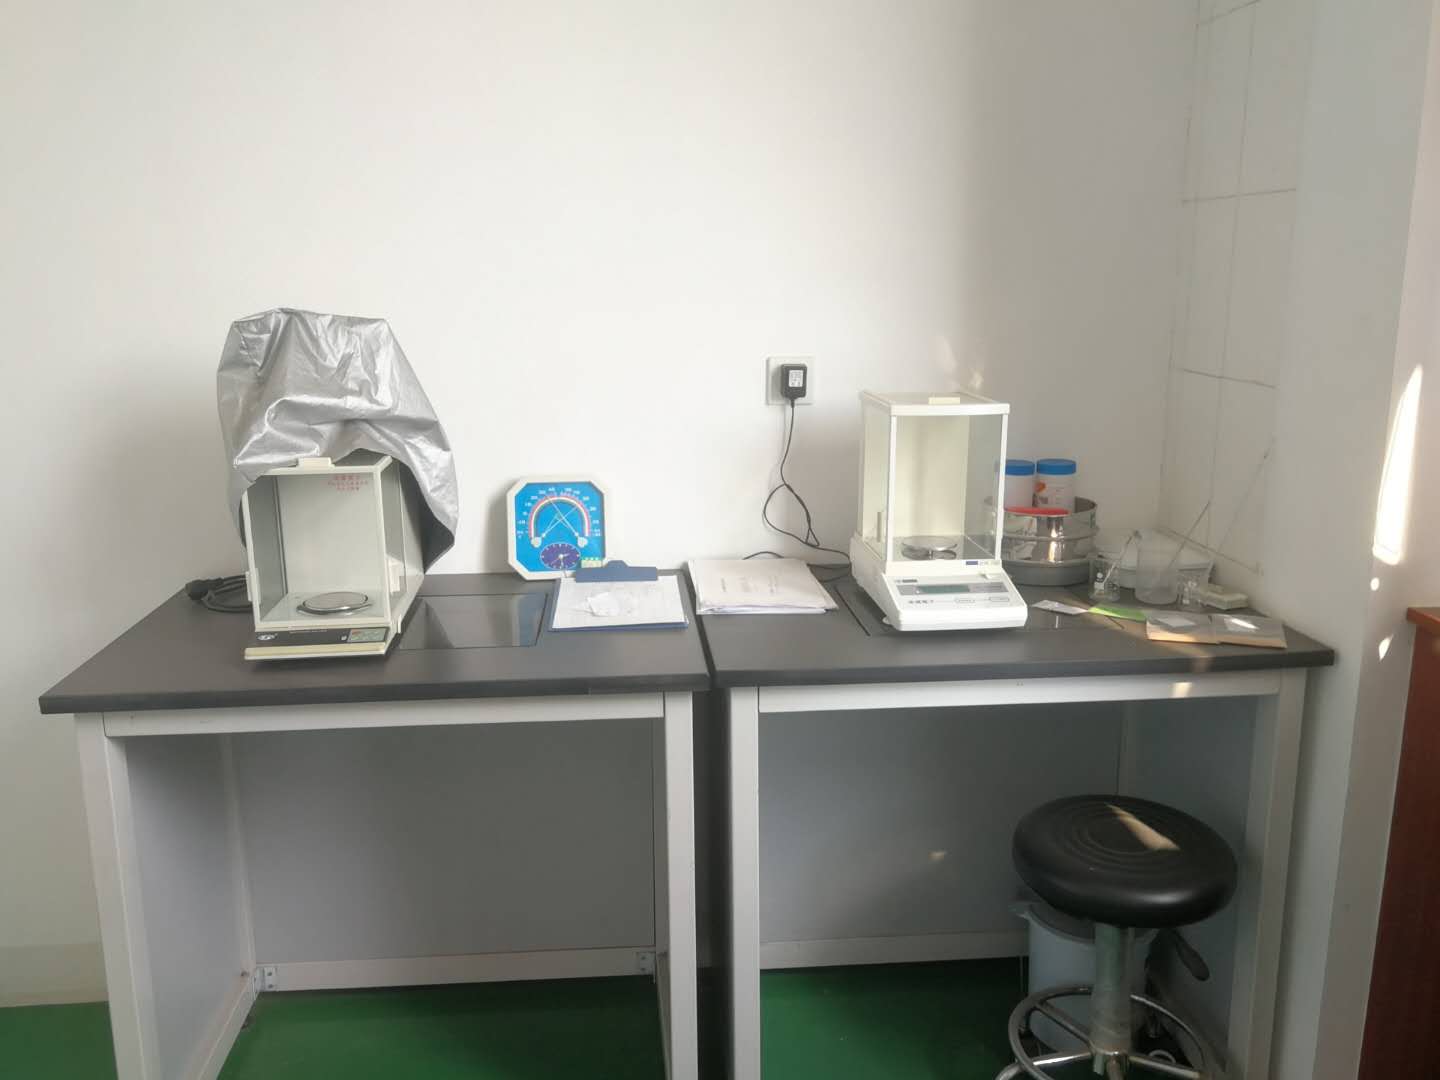 沧州实验室仪器回收报价 薄利回收